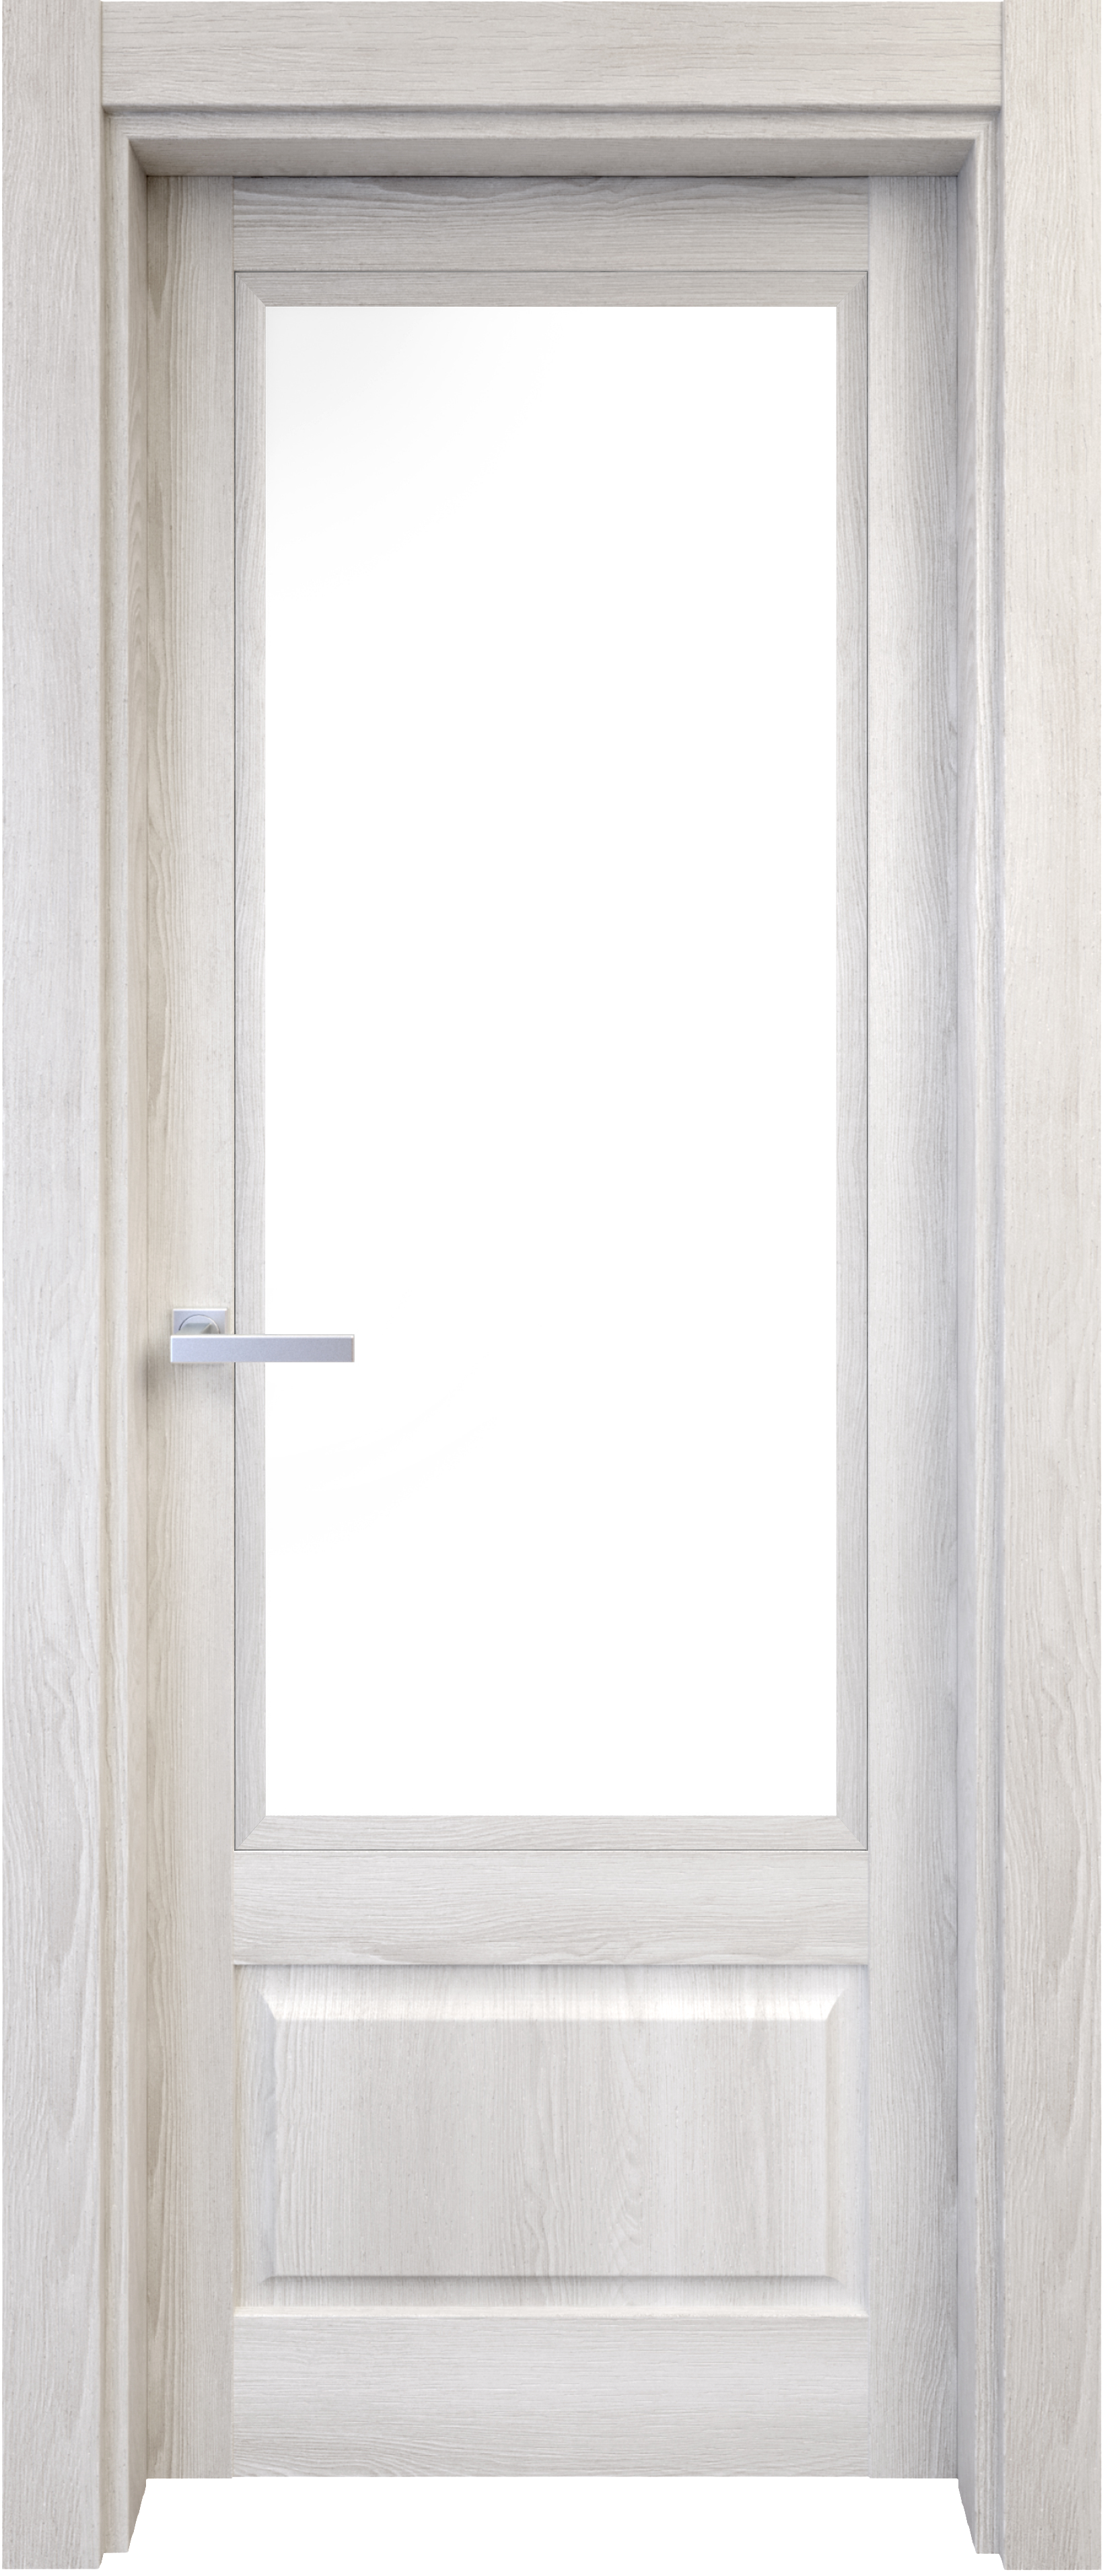 Puerta abatible sofia blanca line plus con cristal blanco derecha de 62.5 cm